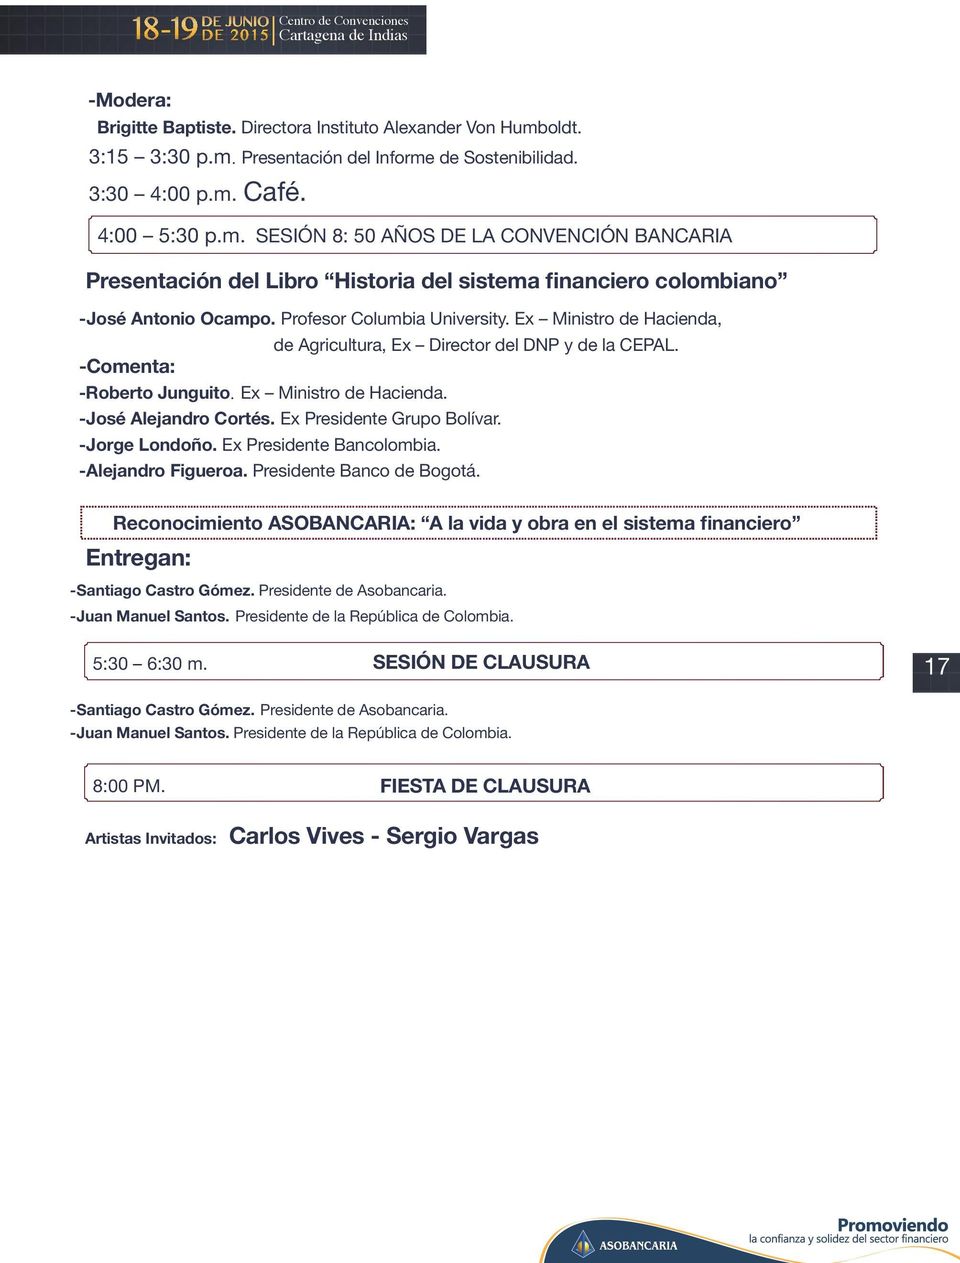 oldt. 3:15 3:30 p.m. Presentación del Informe de Sostenibilidad. 3:30 4:00 p.m. Café. 4:00 5:30 p.m. SESIÓN 8: 50 AÑOS DE LA CONVENCIÓN BANCARIA Presentación del Libro Historia del sistema financiero colombiano - José Antonio Ocampo.